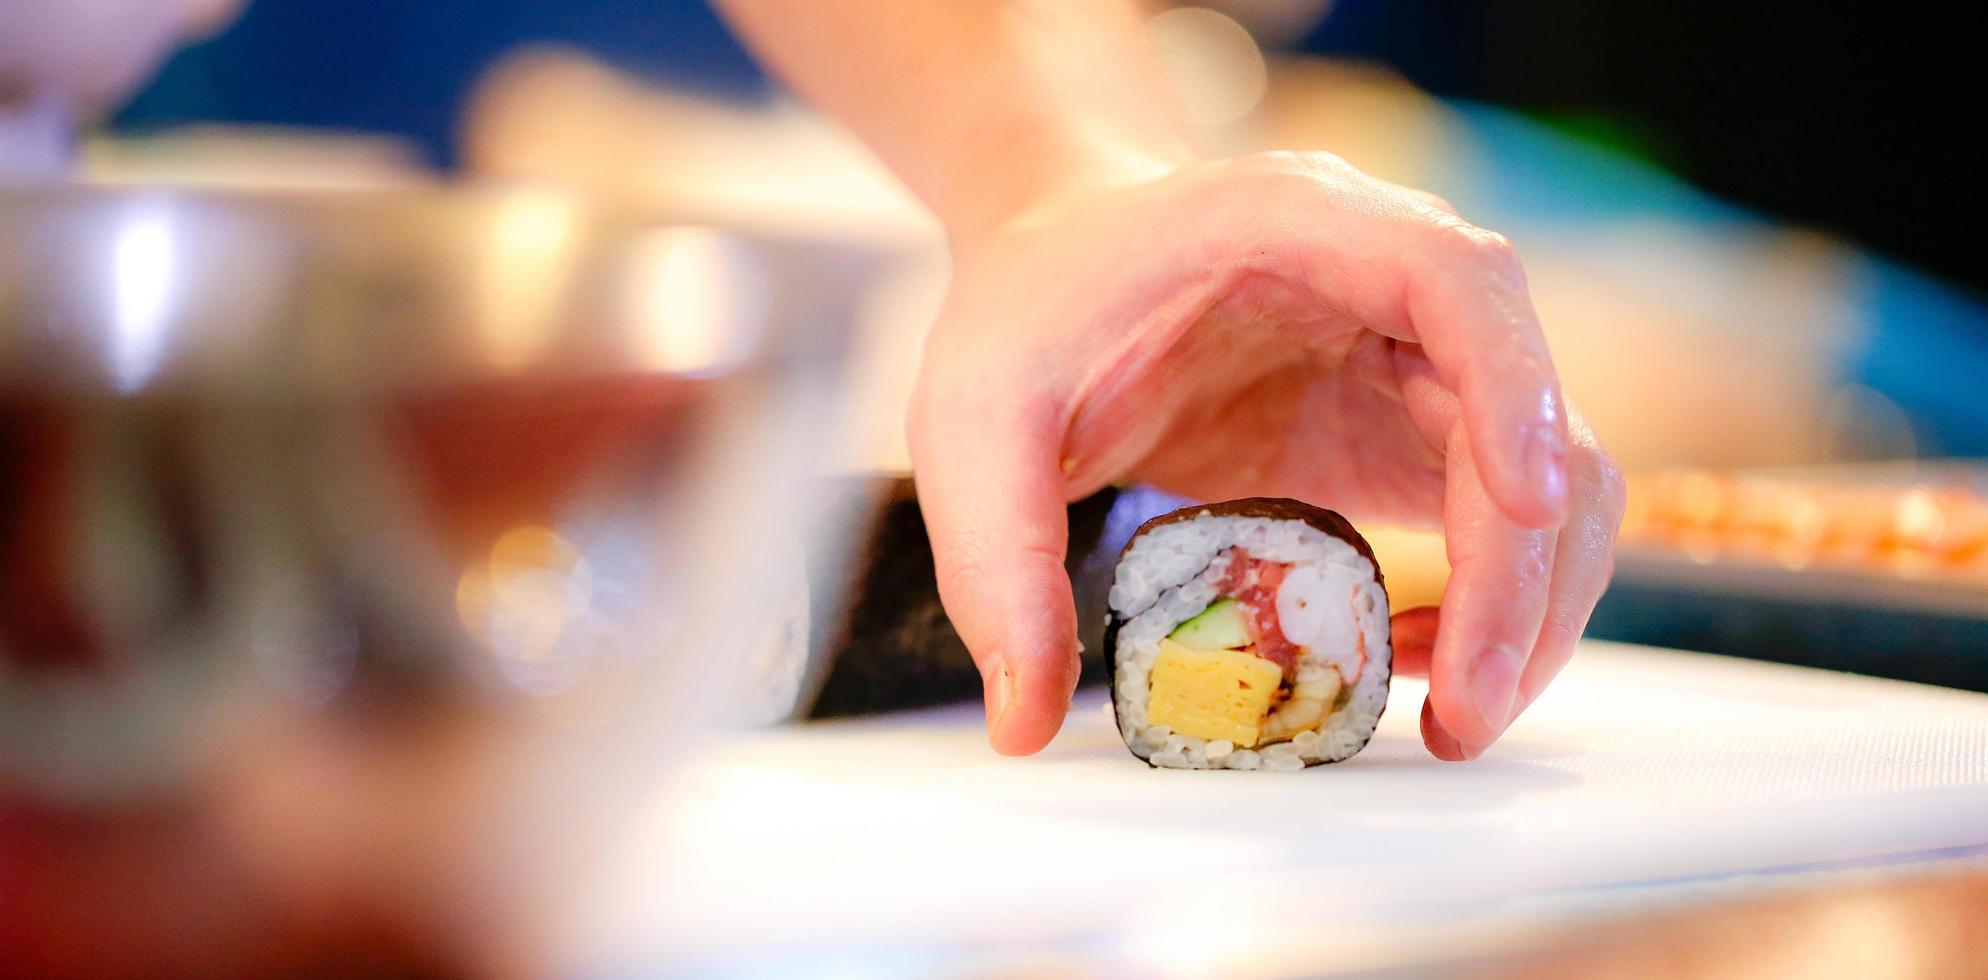 mains de chef préparant la nourriture japonaise, chef faisant des sushis photo